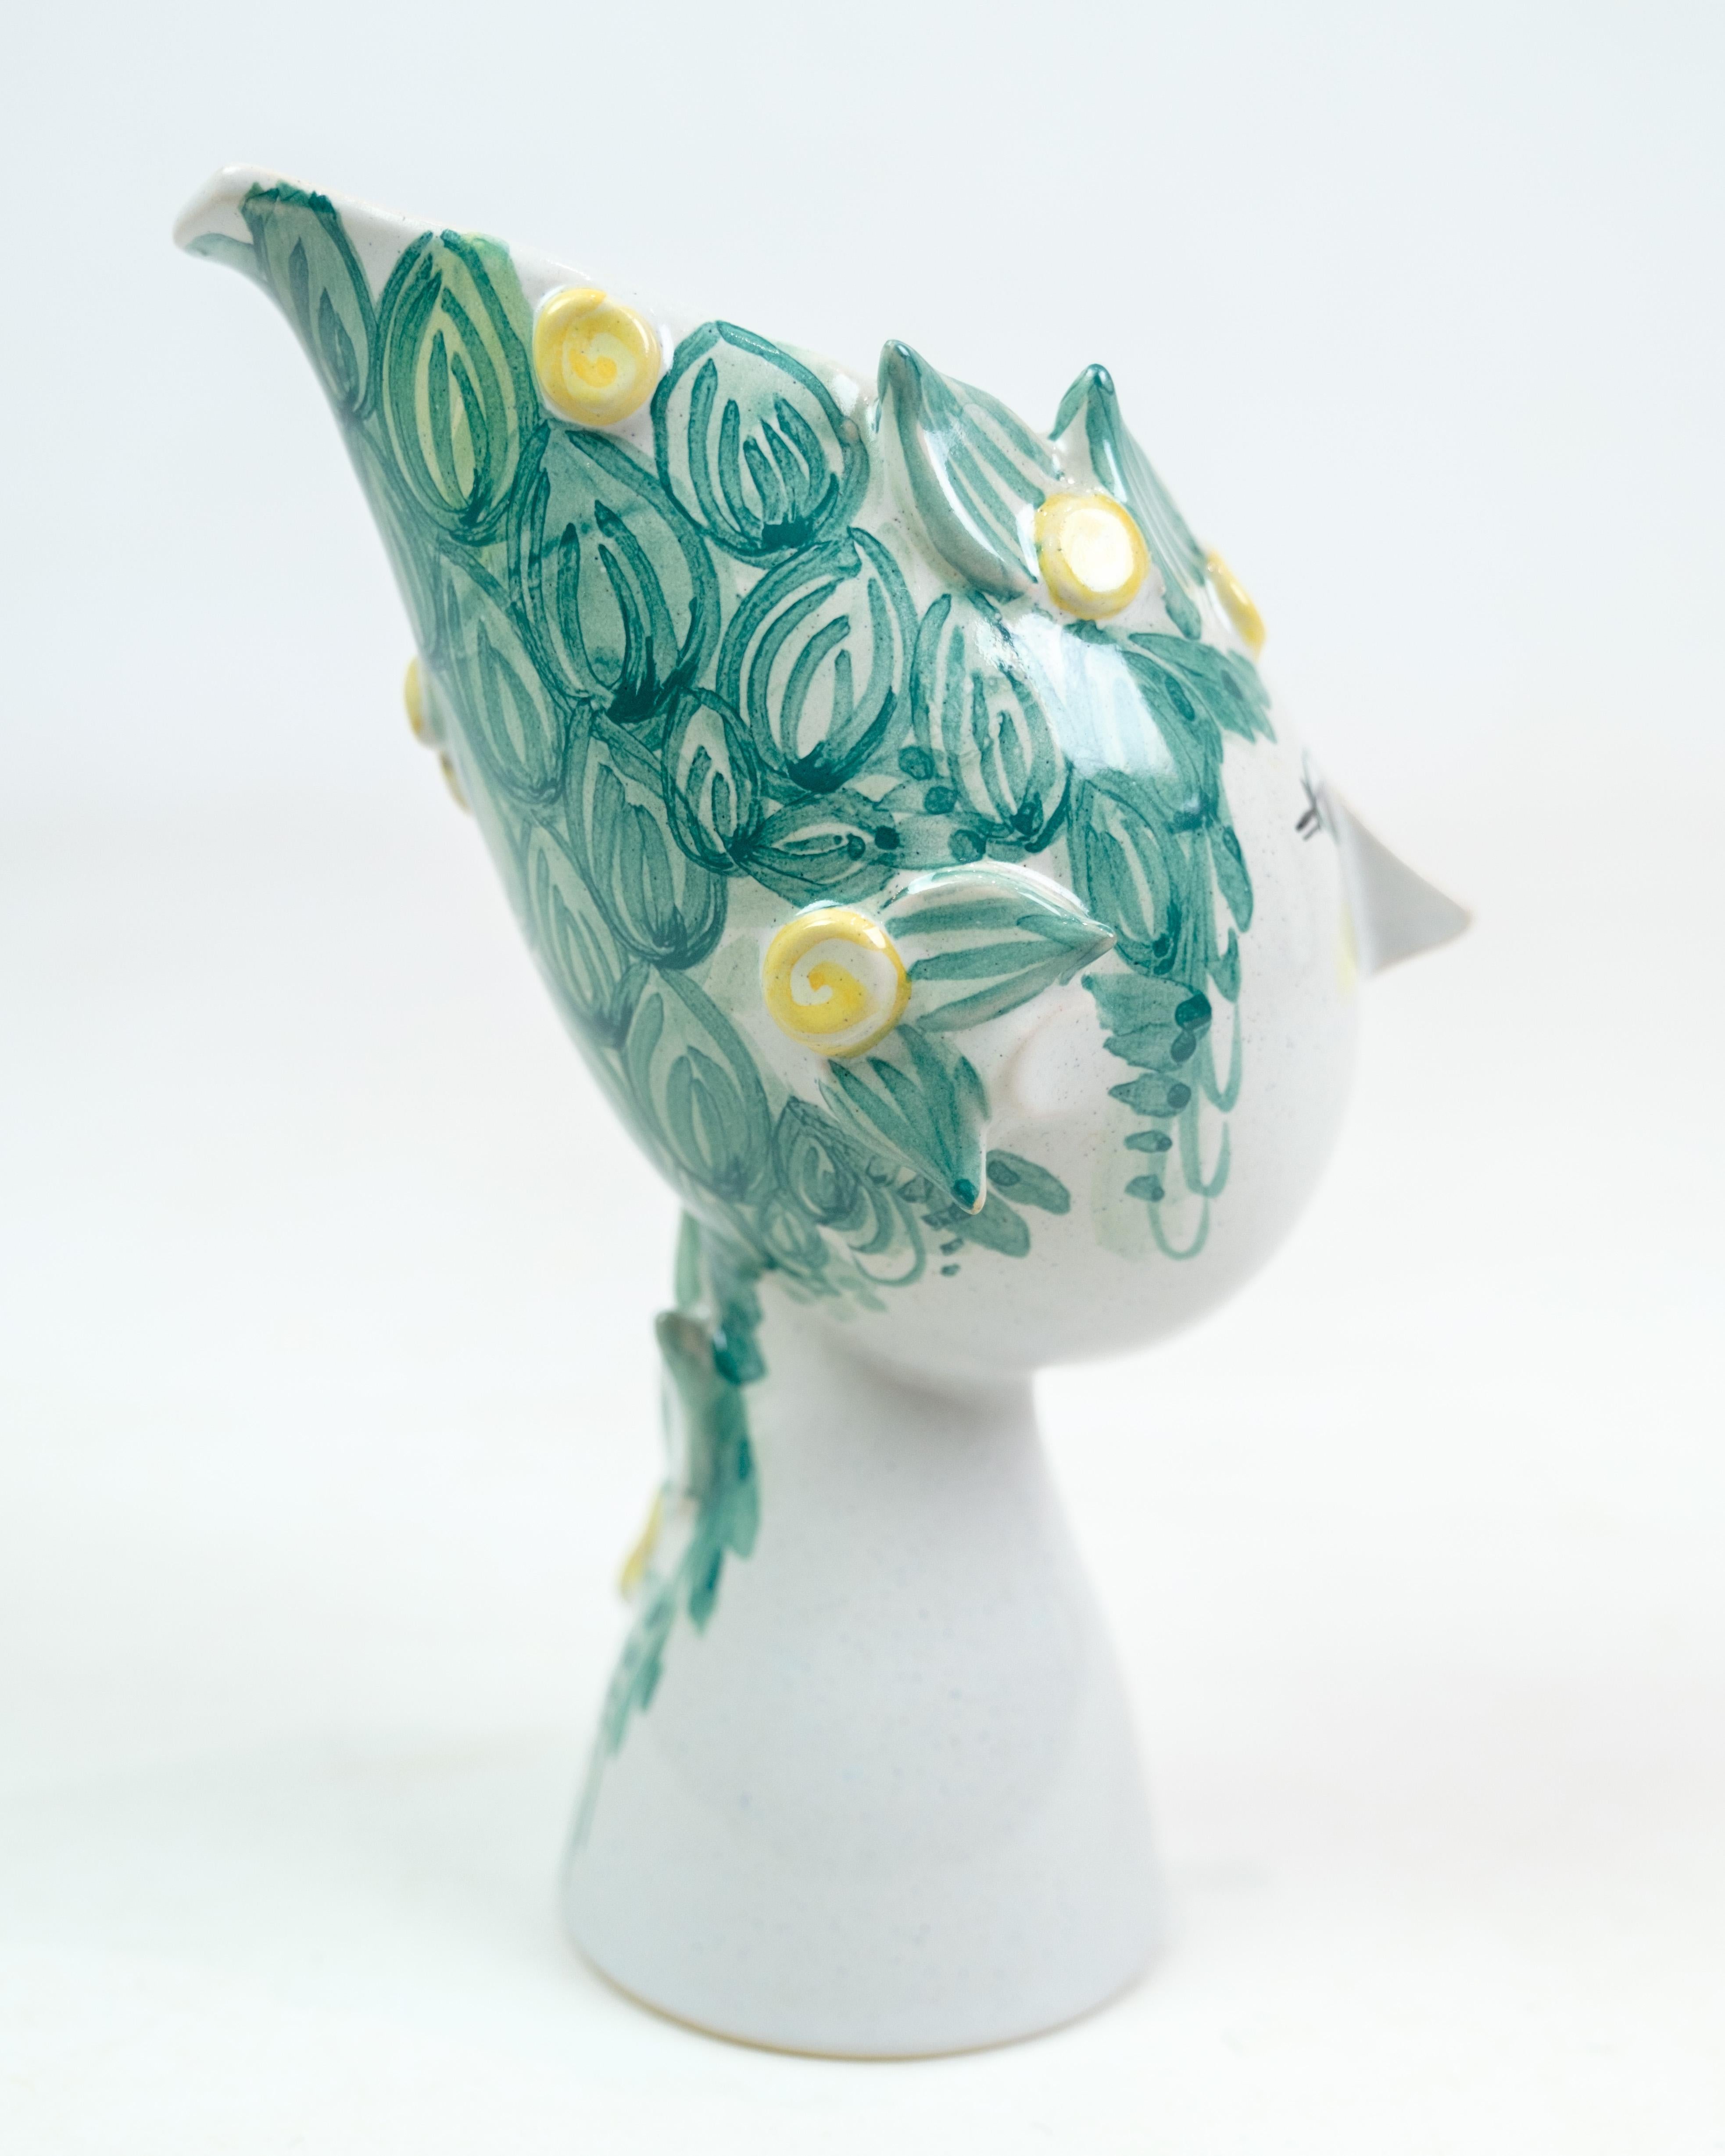 Vase en céramique conçu par Bjørn Wiinblad, avec le numéro de dessin. V18 de 1975, produit au Danemark. Ce vase est représentatif du style distinctif de Wiinblad, qui incluait souvent des motifs imaginatifs et colorés.

 Avec une influence d'époque